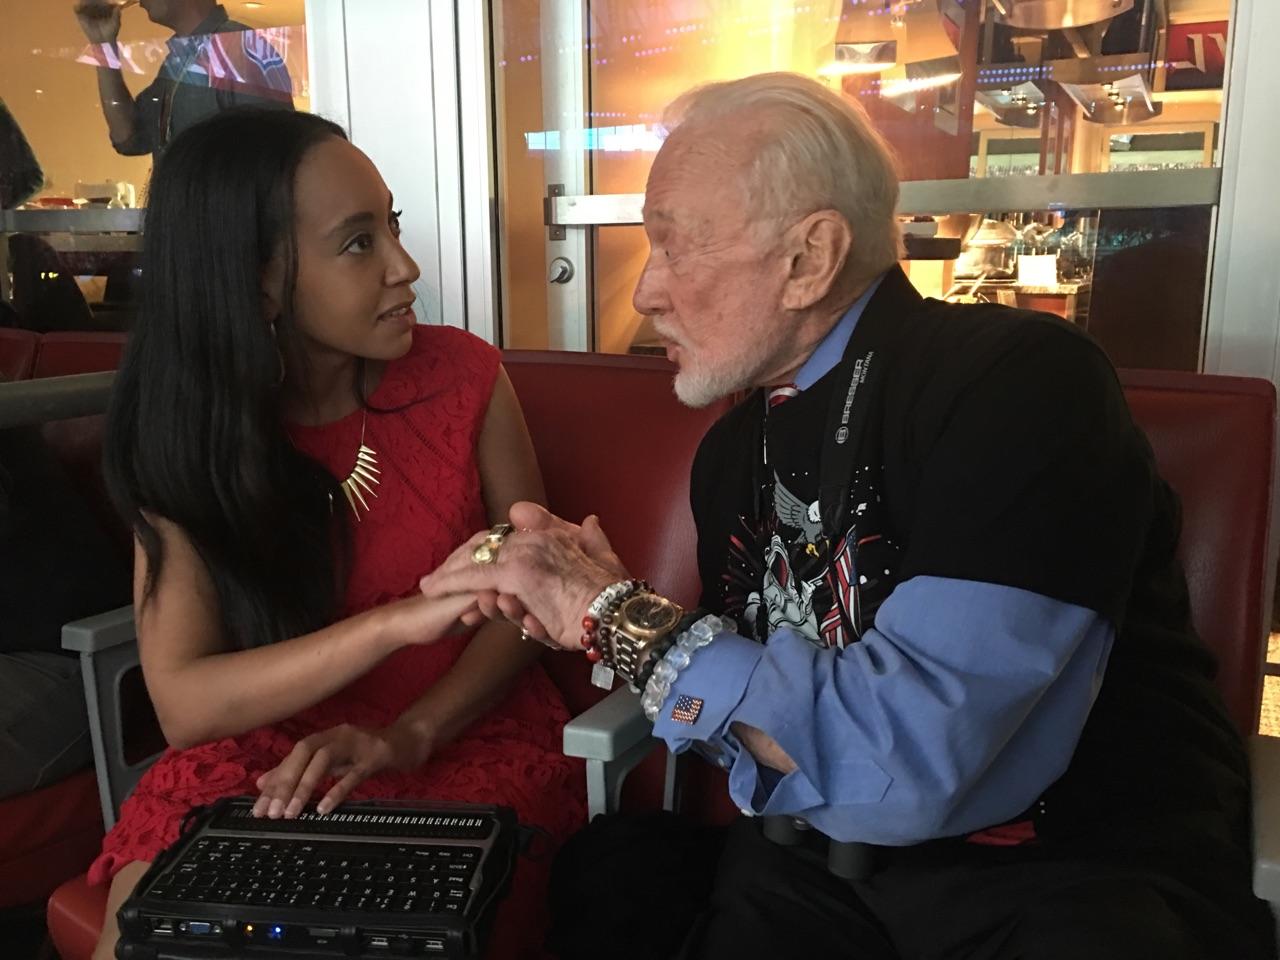 Haben speaking with Buzz Aldrin at Super Bowl LI